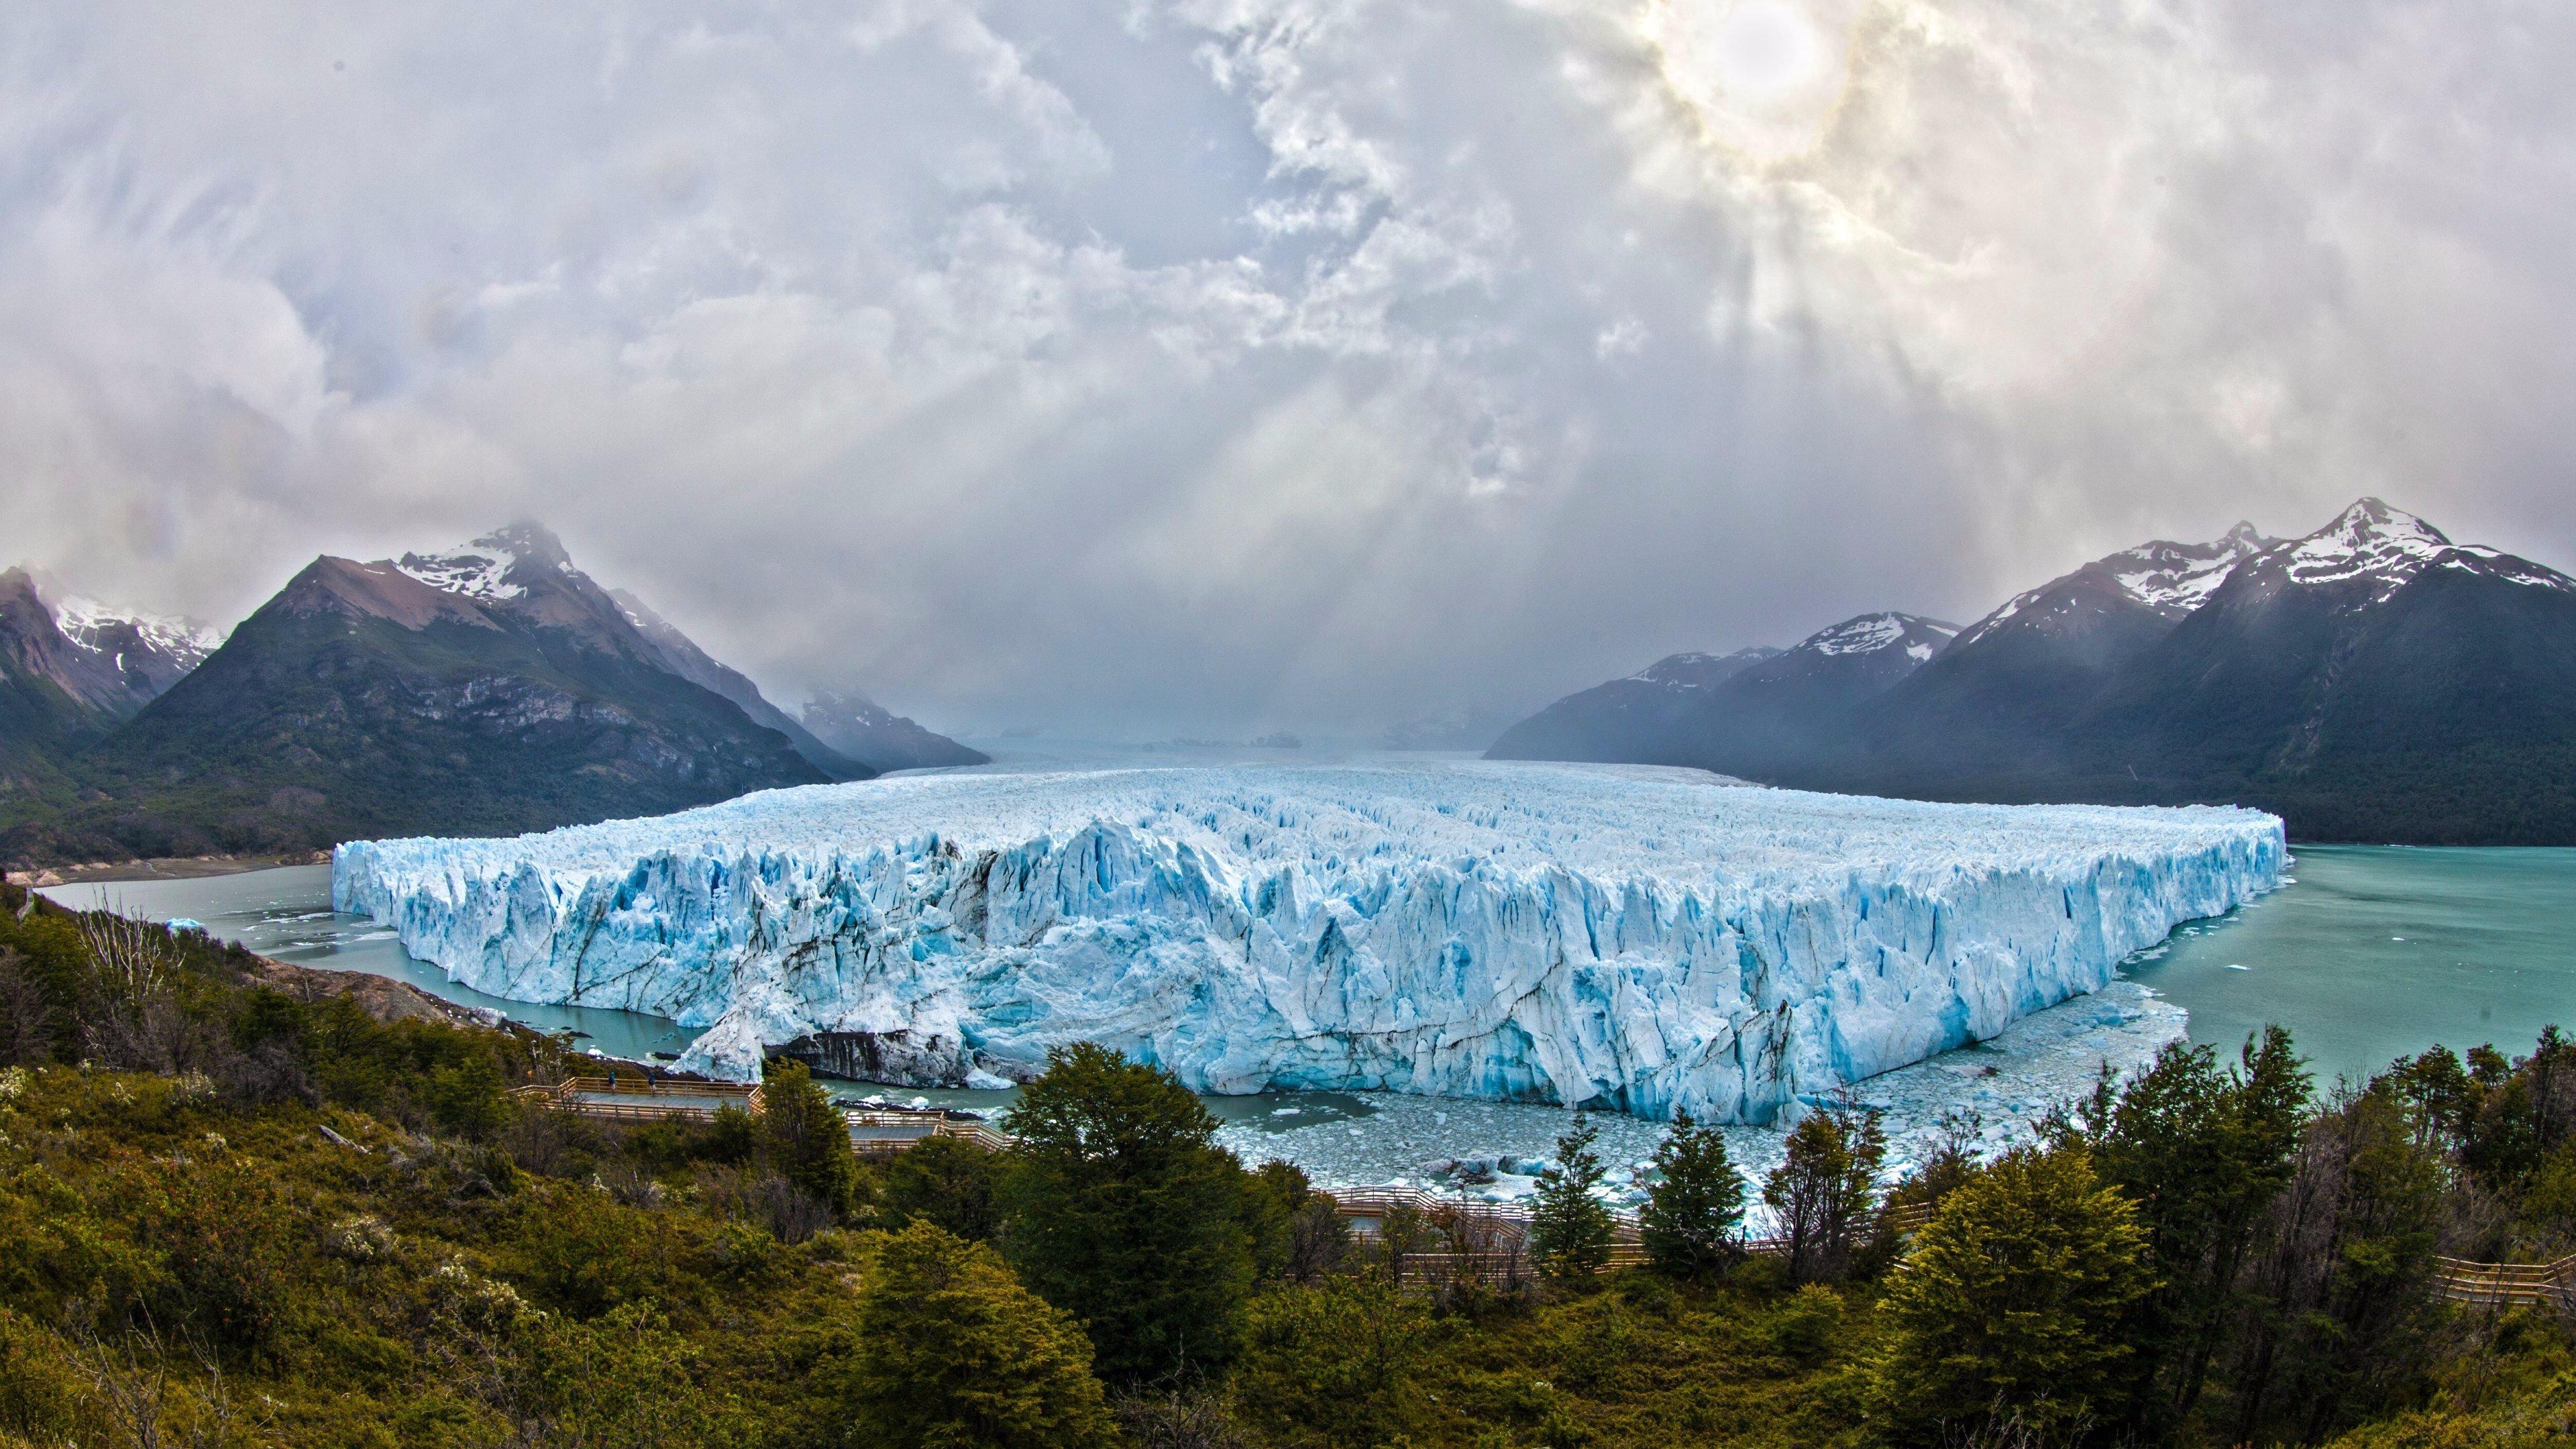 Perito Moreno Glacier Glaciares National Park, Santa Cruz